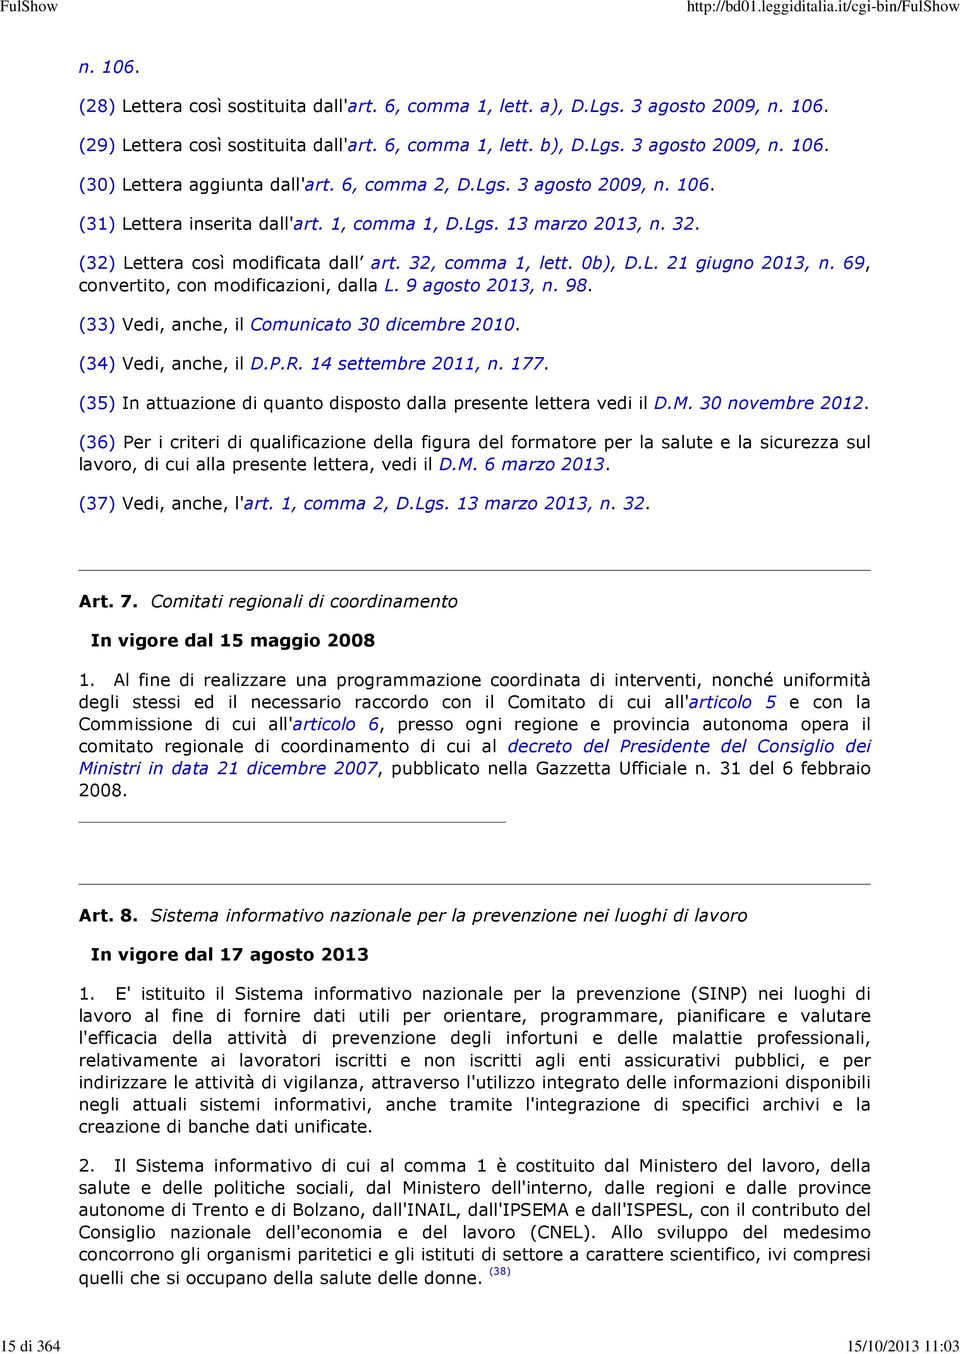 69, convertito, con modificazioni, dalla L. 9 agosto 2013, n. 98. (33) Vedi, anche, il Comunicato 30 dicembre 2010. (34) Vedi, anche, il D.P.R. 14 settembre 2011, n. 177.